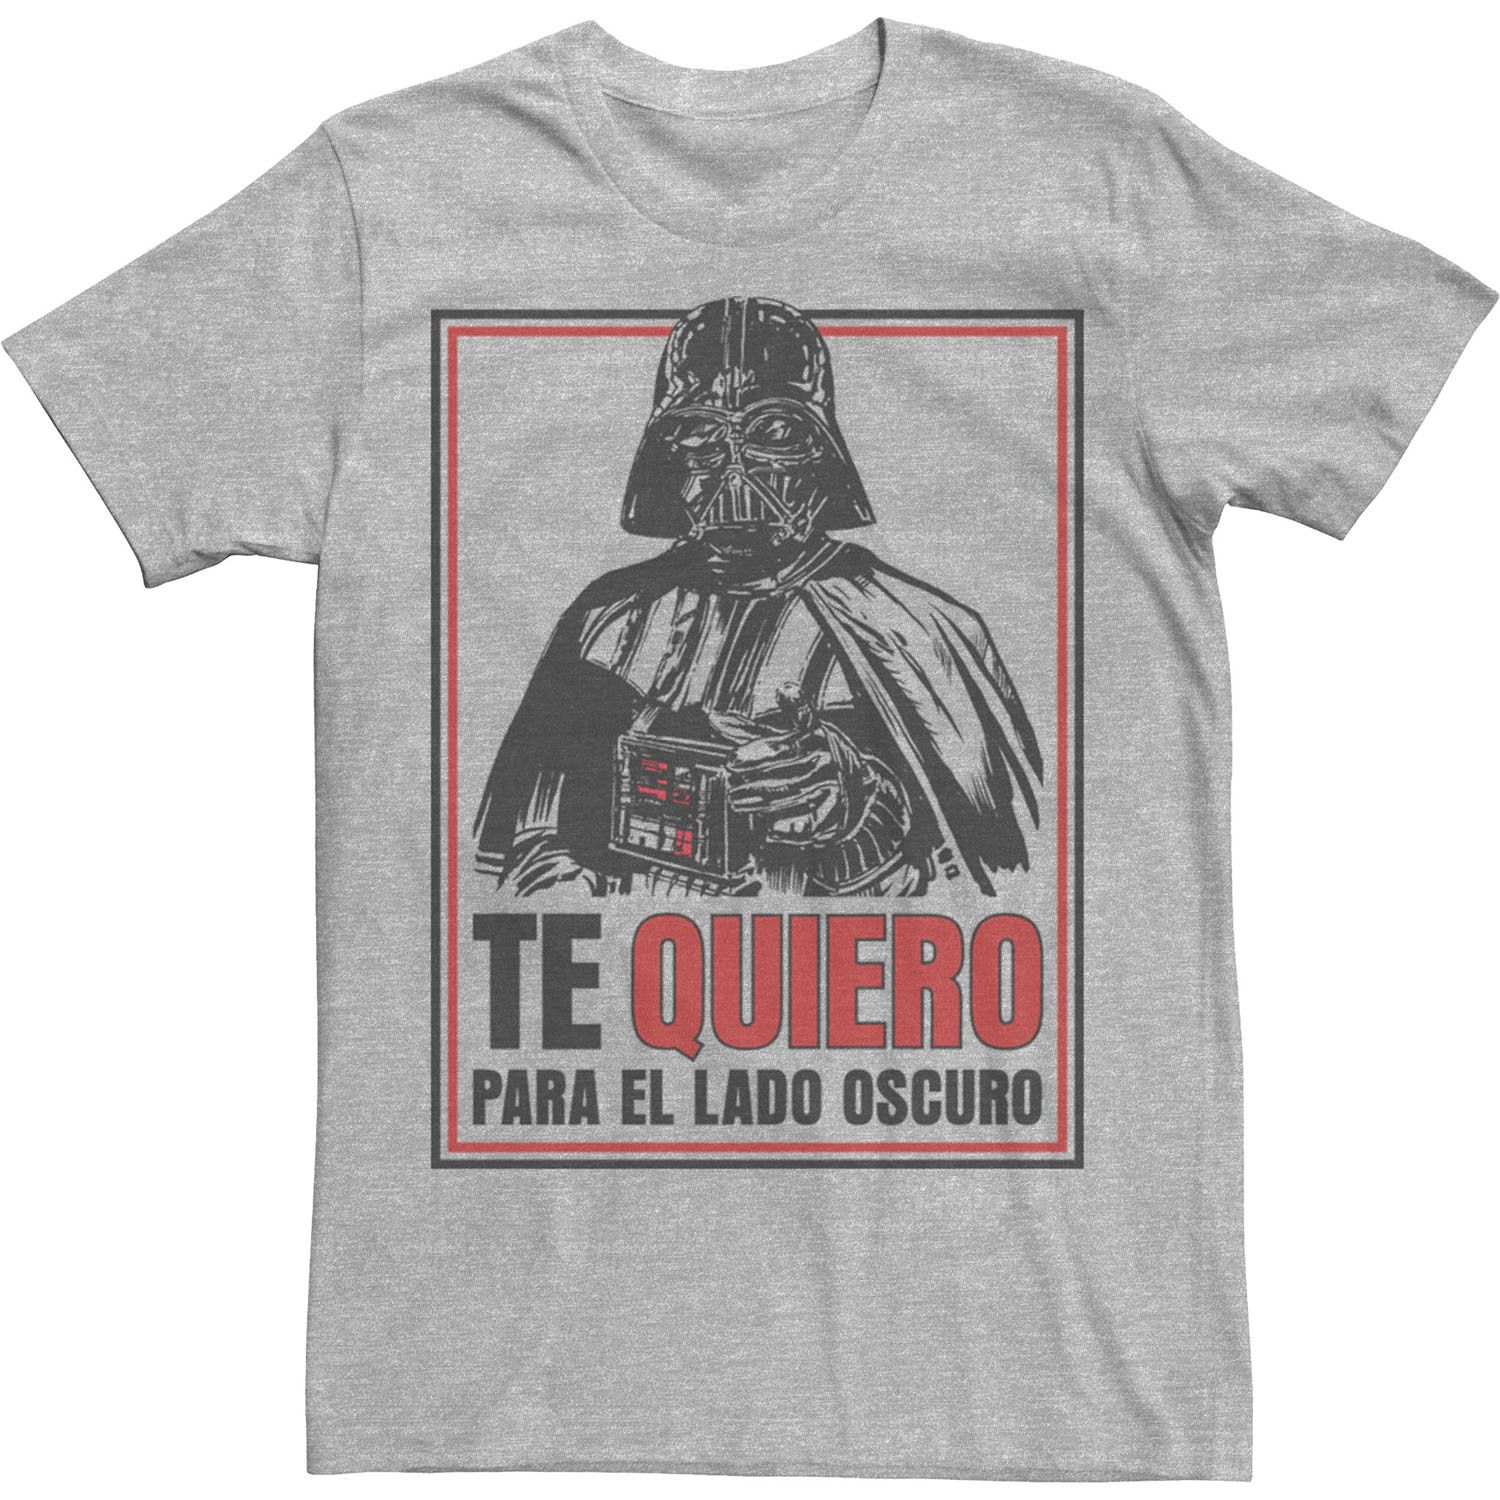 Мужская футболка Te Quiero Para El Lado Oscuro Star Wars мужская футболка te quiero para el lado oscuro star wars светло синий